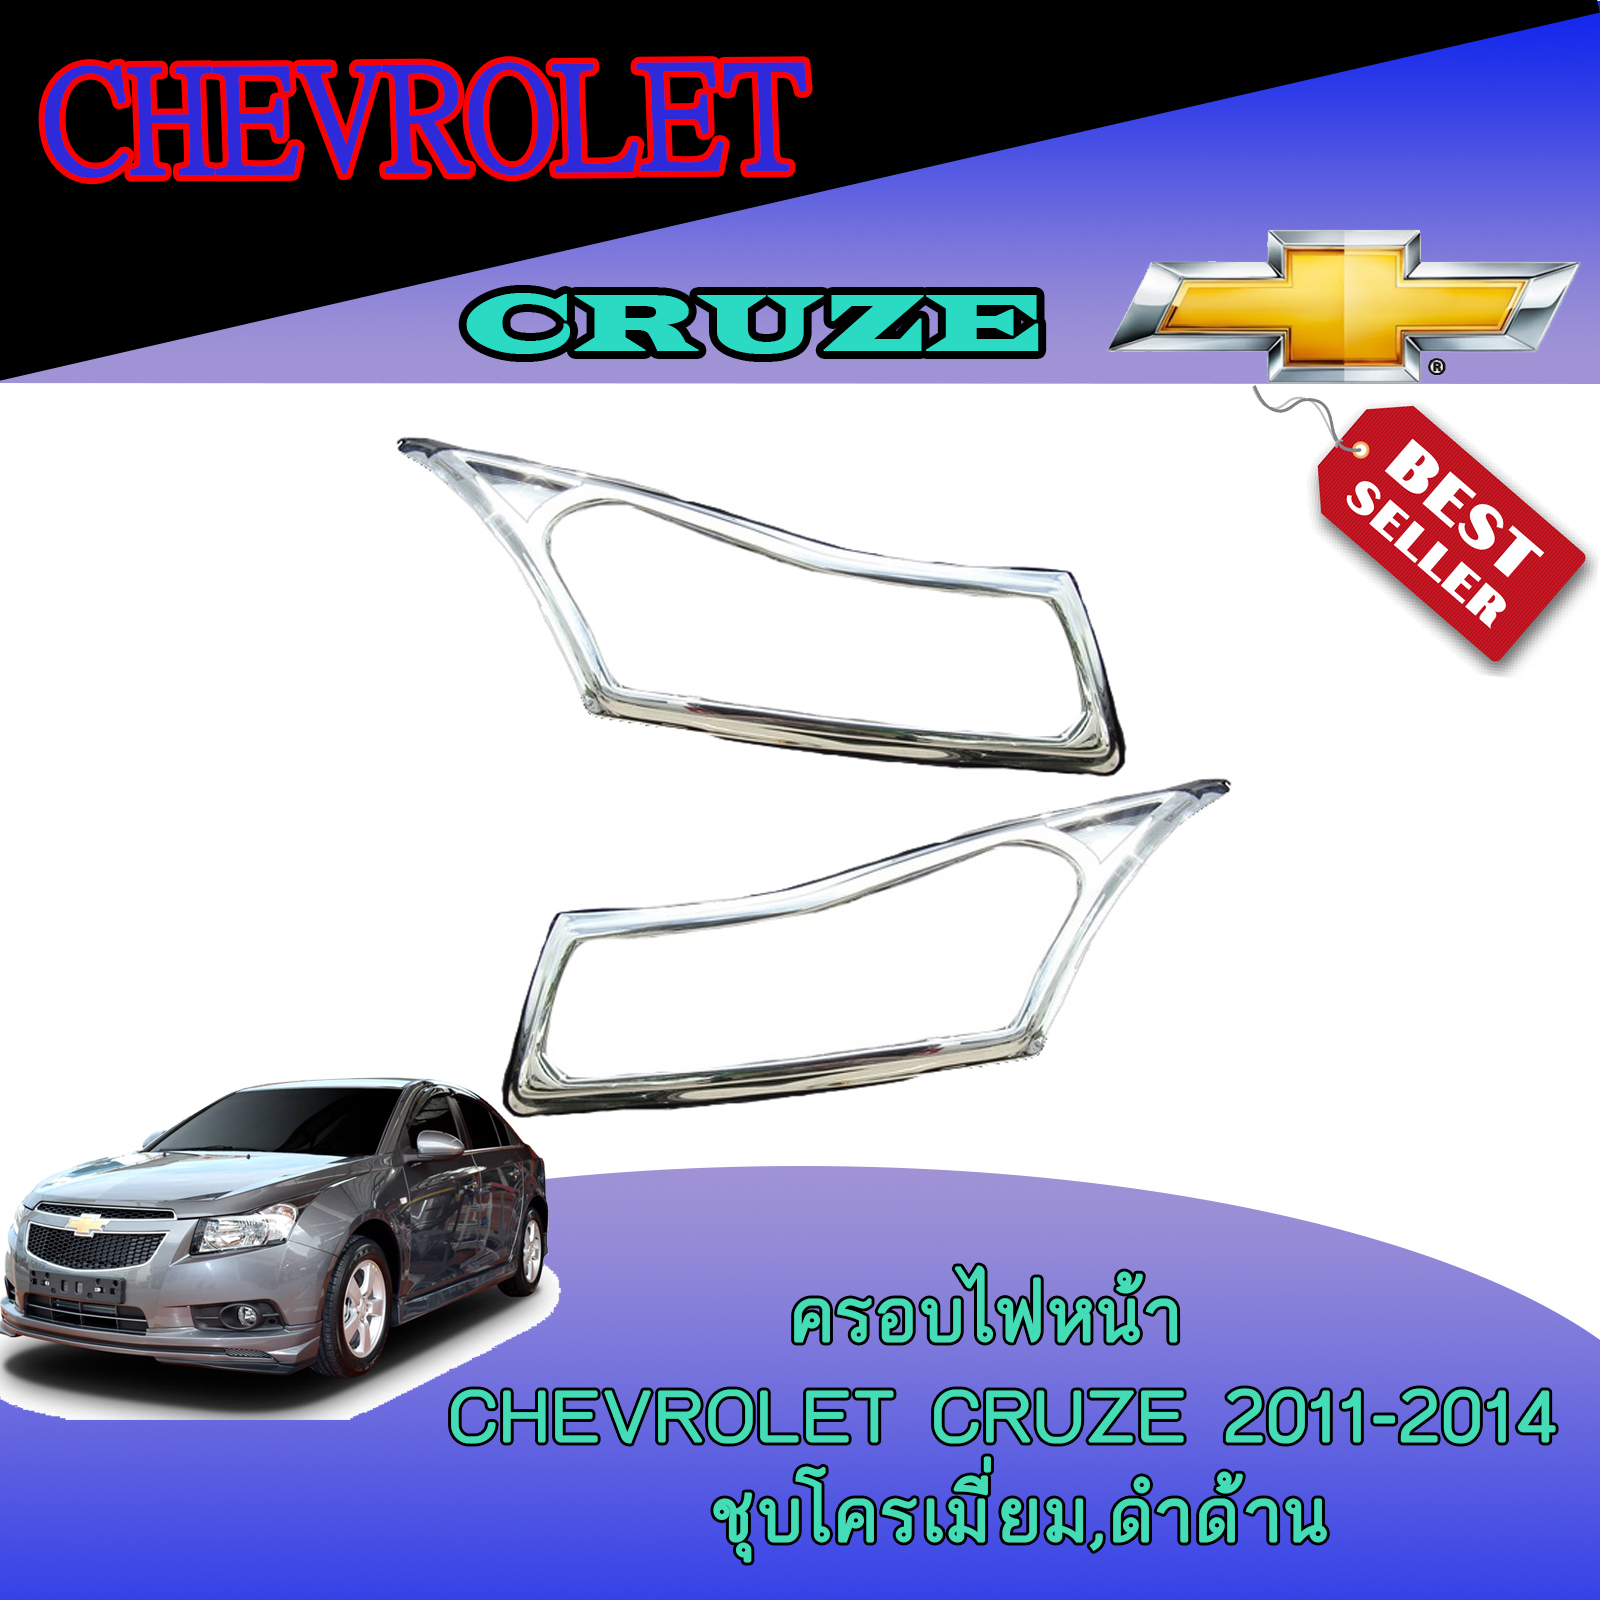 ครอบไฟหน้า Chevrolet Cruze (เชฟโรเลต ครูช) 2011-2014 ดำด้าน